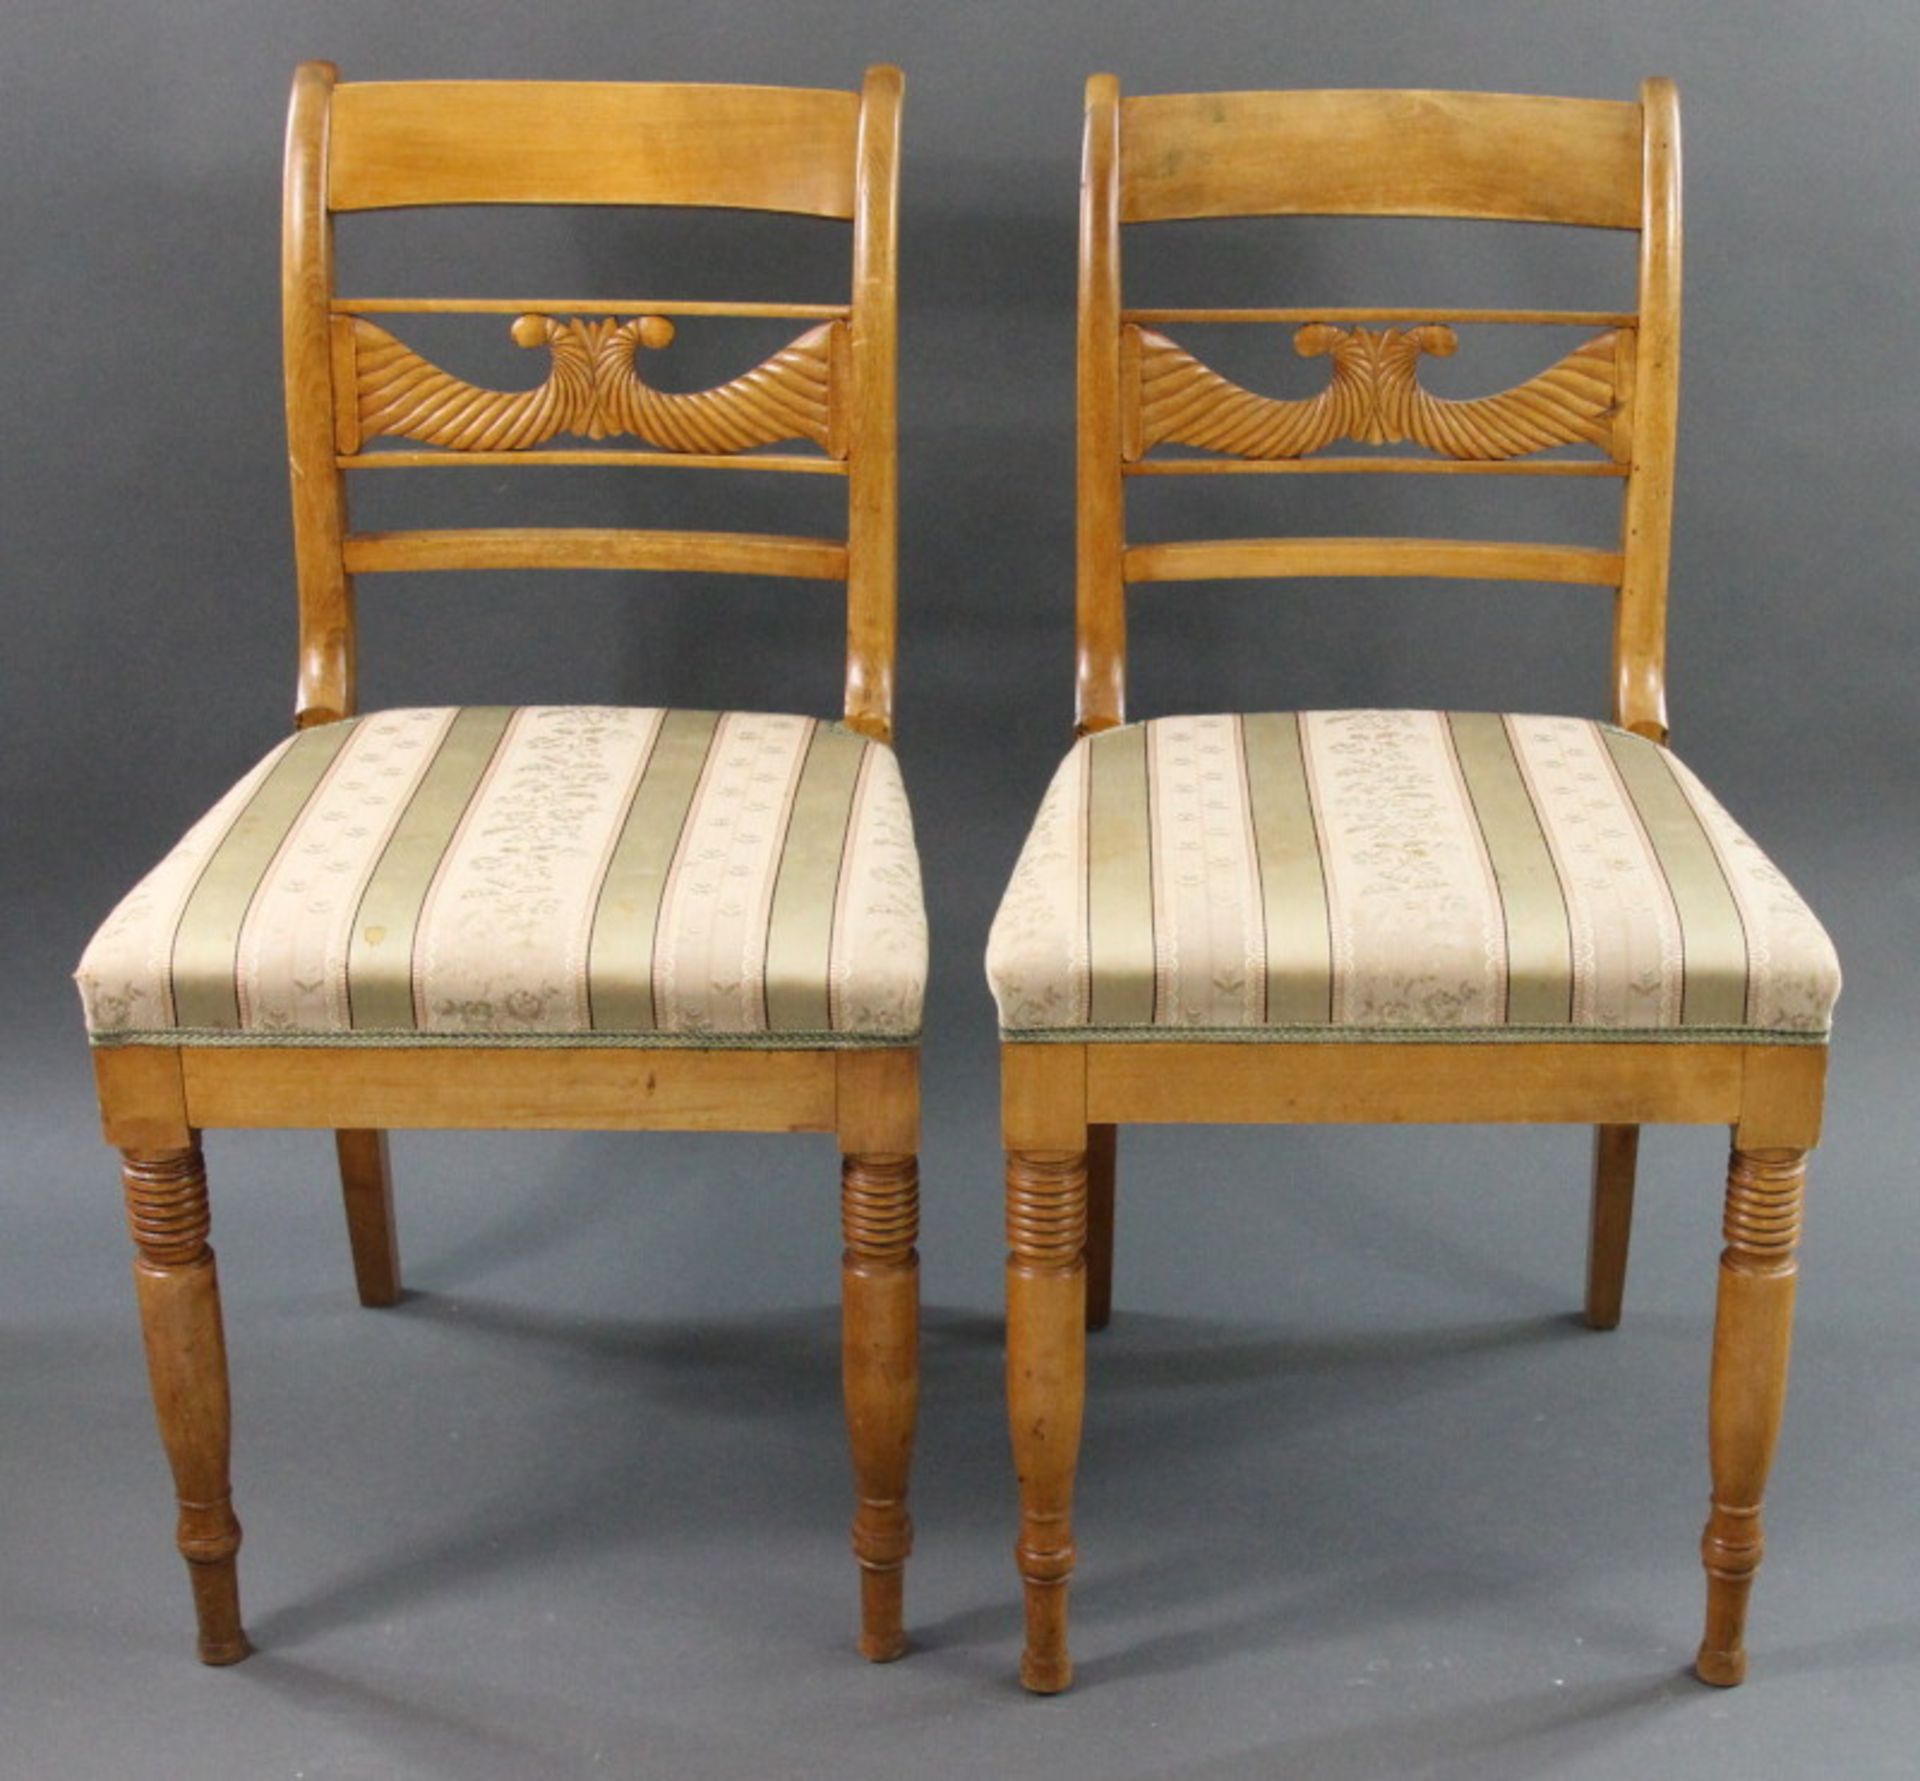 1 Paar Biedermeier Stühle, Ahorn, Schweden, 19. Jhd.Rückenteil mit stilisierten Füllhörnern, Höhe: